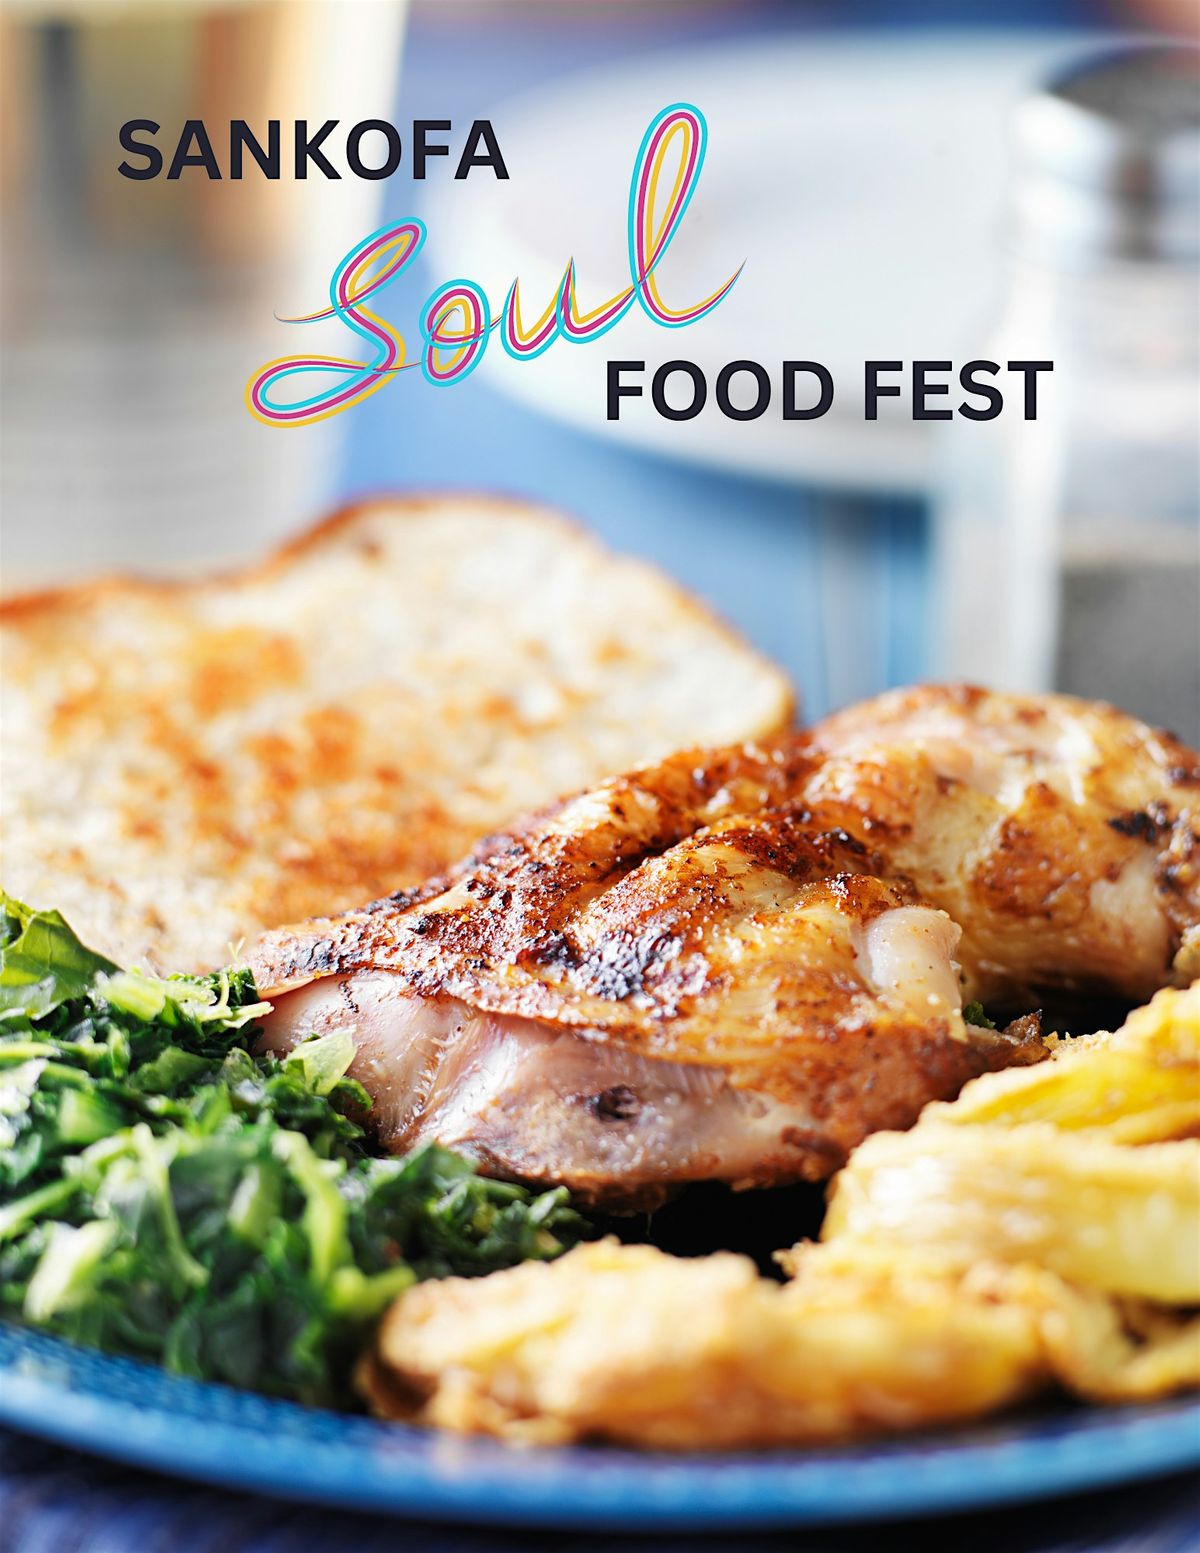 Sankofa Soul Food Fest